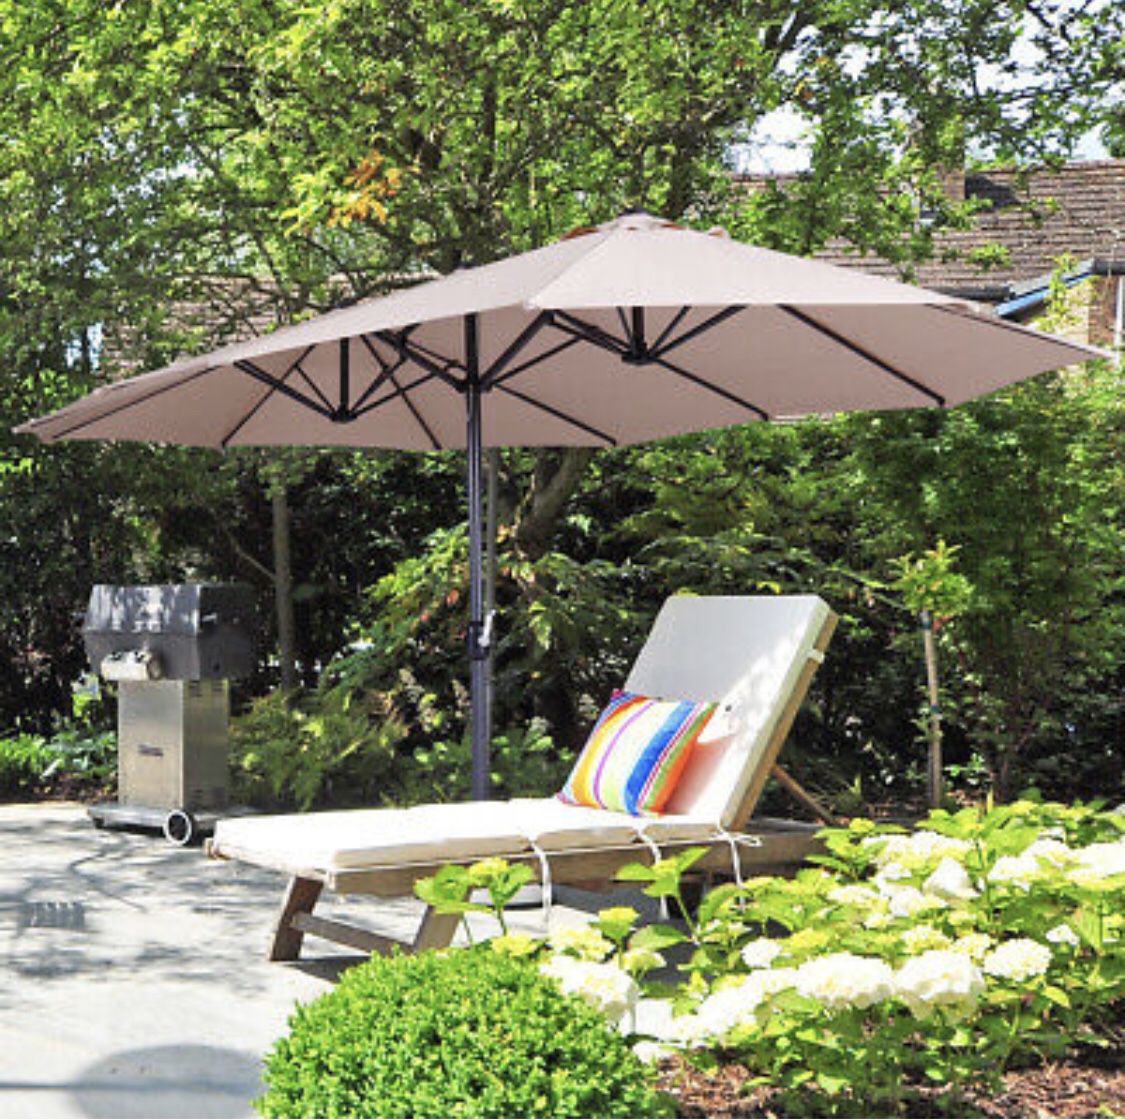 15ft Sun Shade Patio Iron Market Umbrella UV20+ Outdoor Cafe Garden Beach Khaki * new in box*